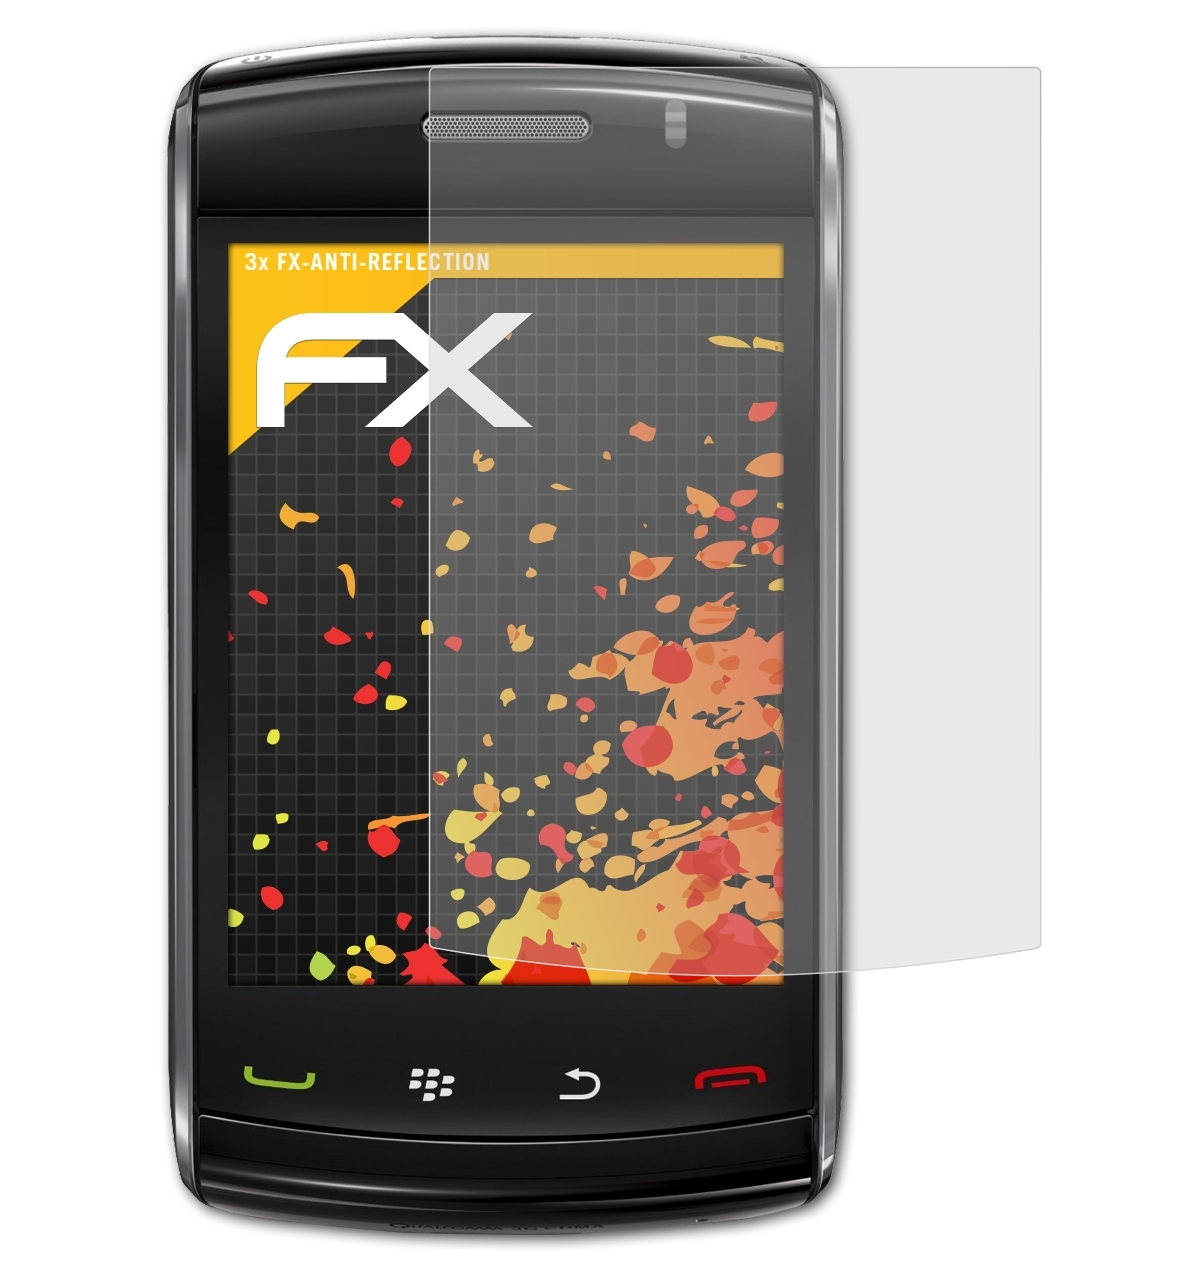 3x FX-Antireflex Displayschutz(für ATFOLIX 9520 Storm2) Blackberry